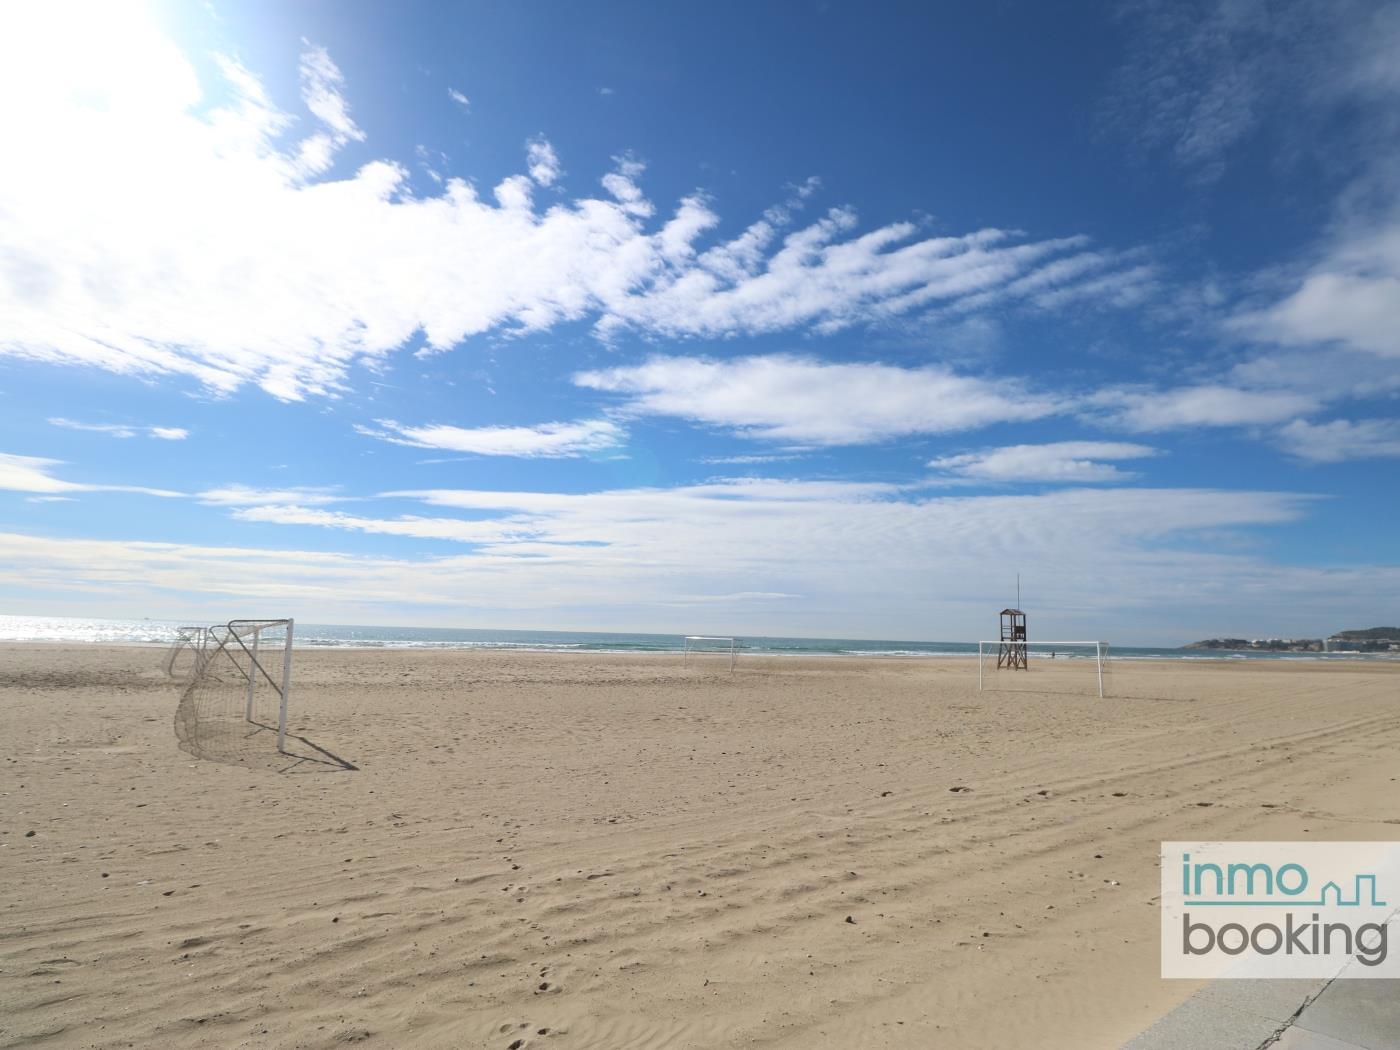 InmoBooking BEACH, climatizado y a 5 minutos a pie de la playa- en La Pineda